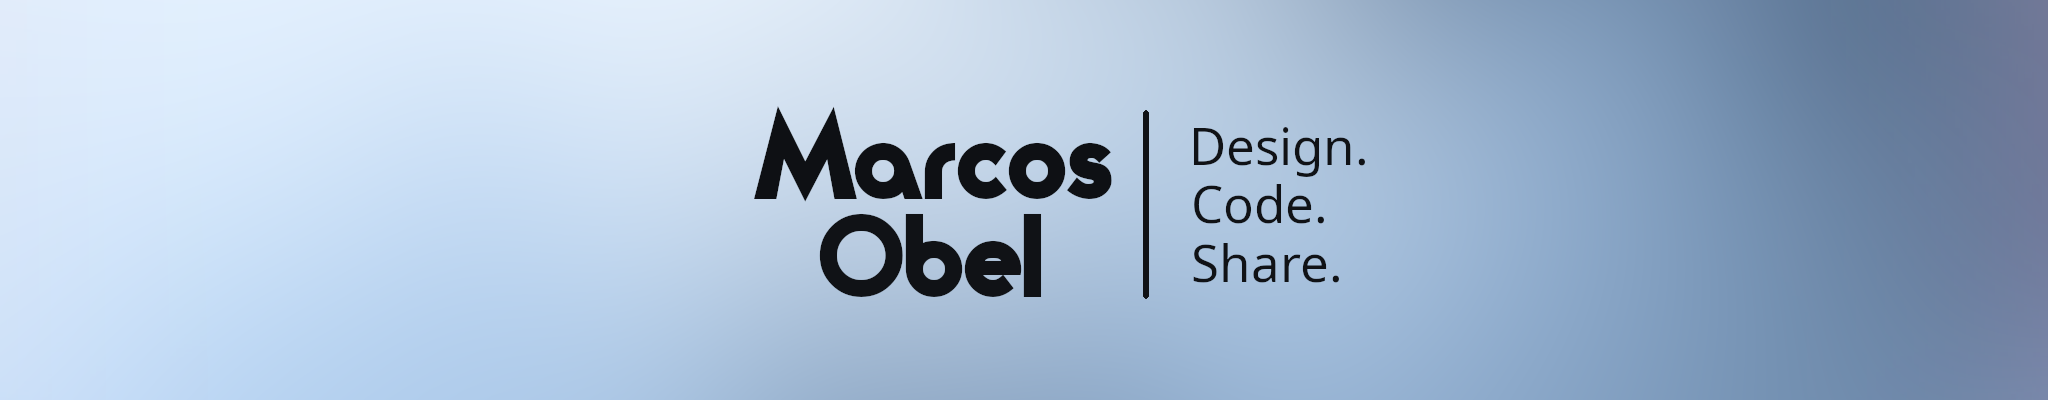 Marcos Obel - Design. Code. Share.